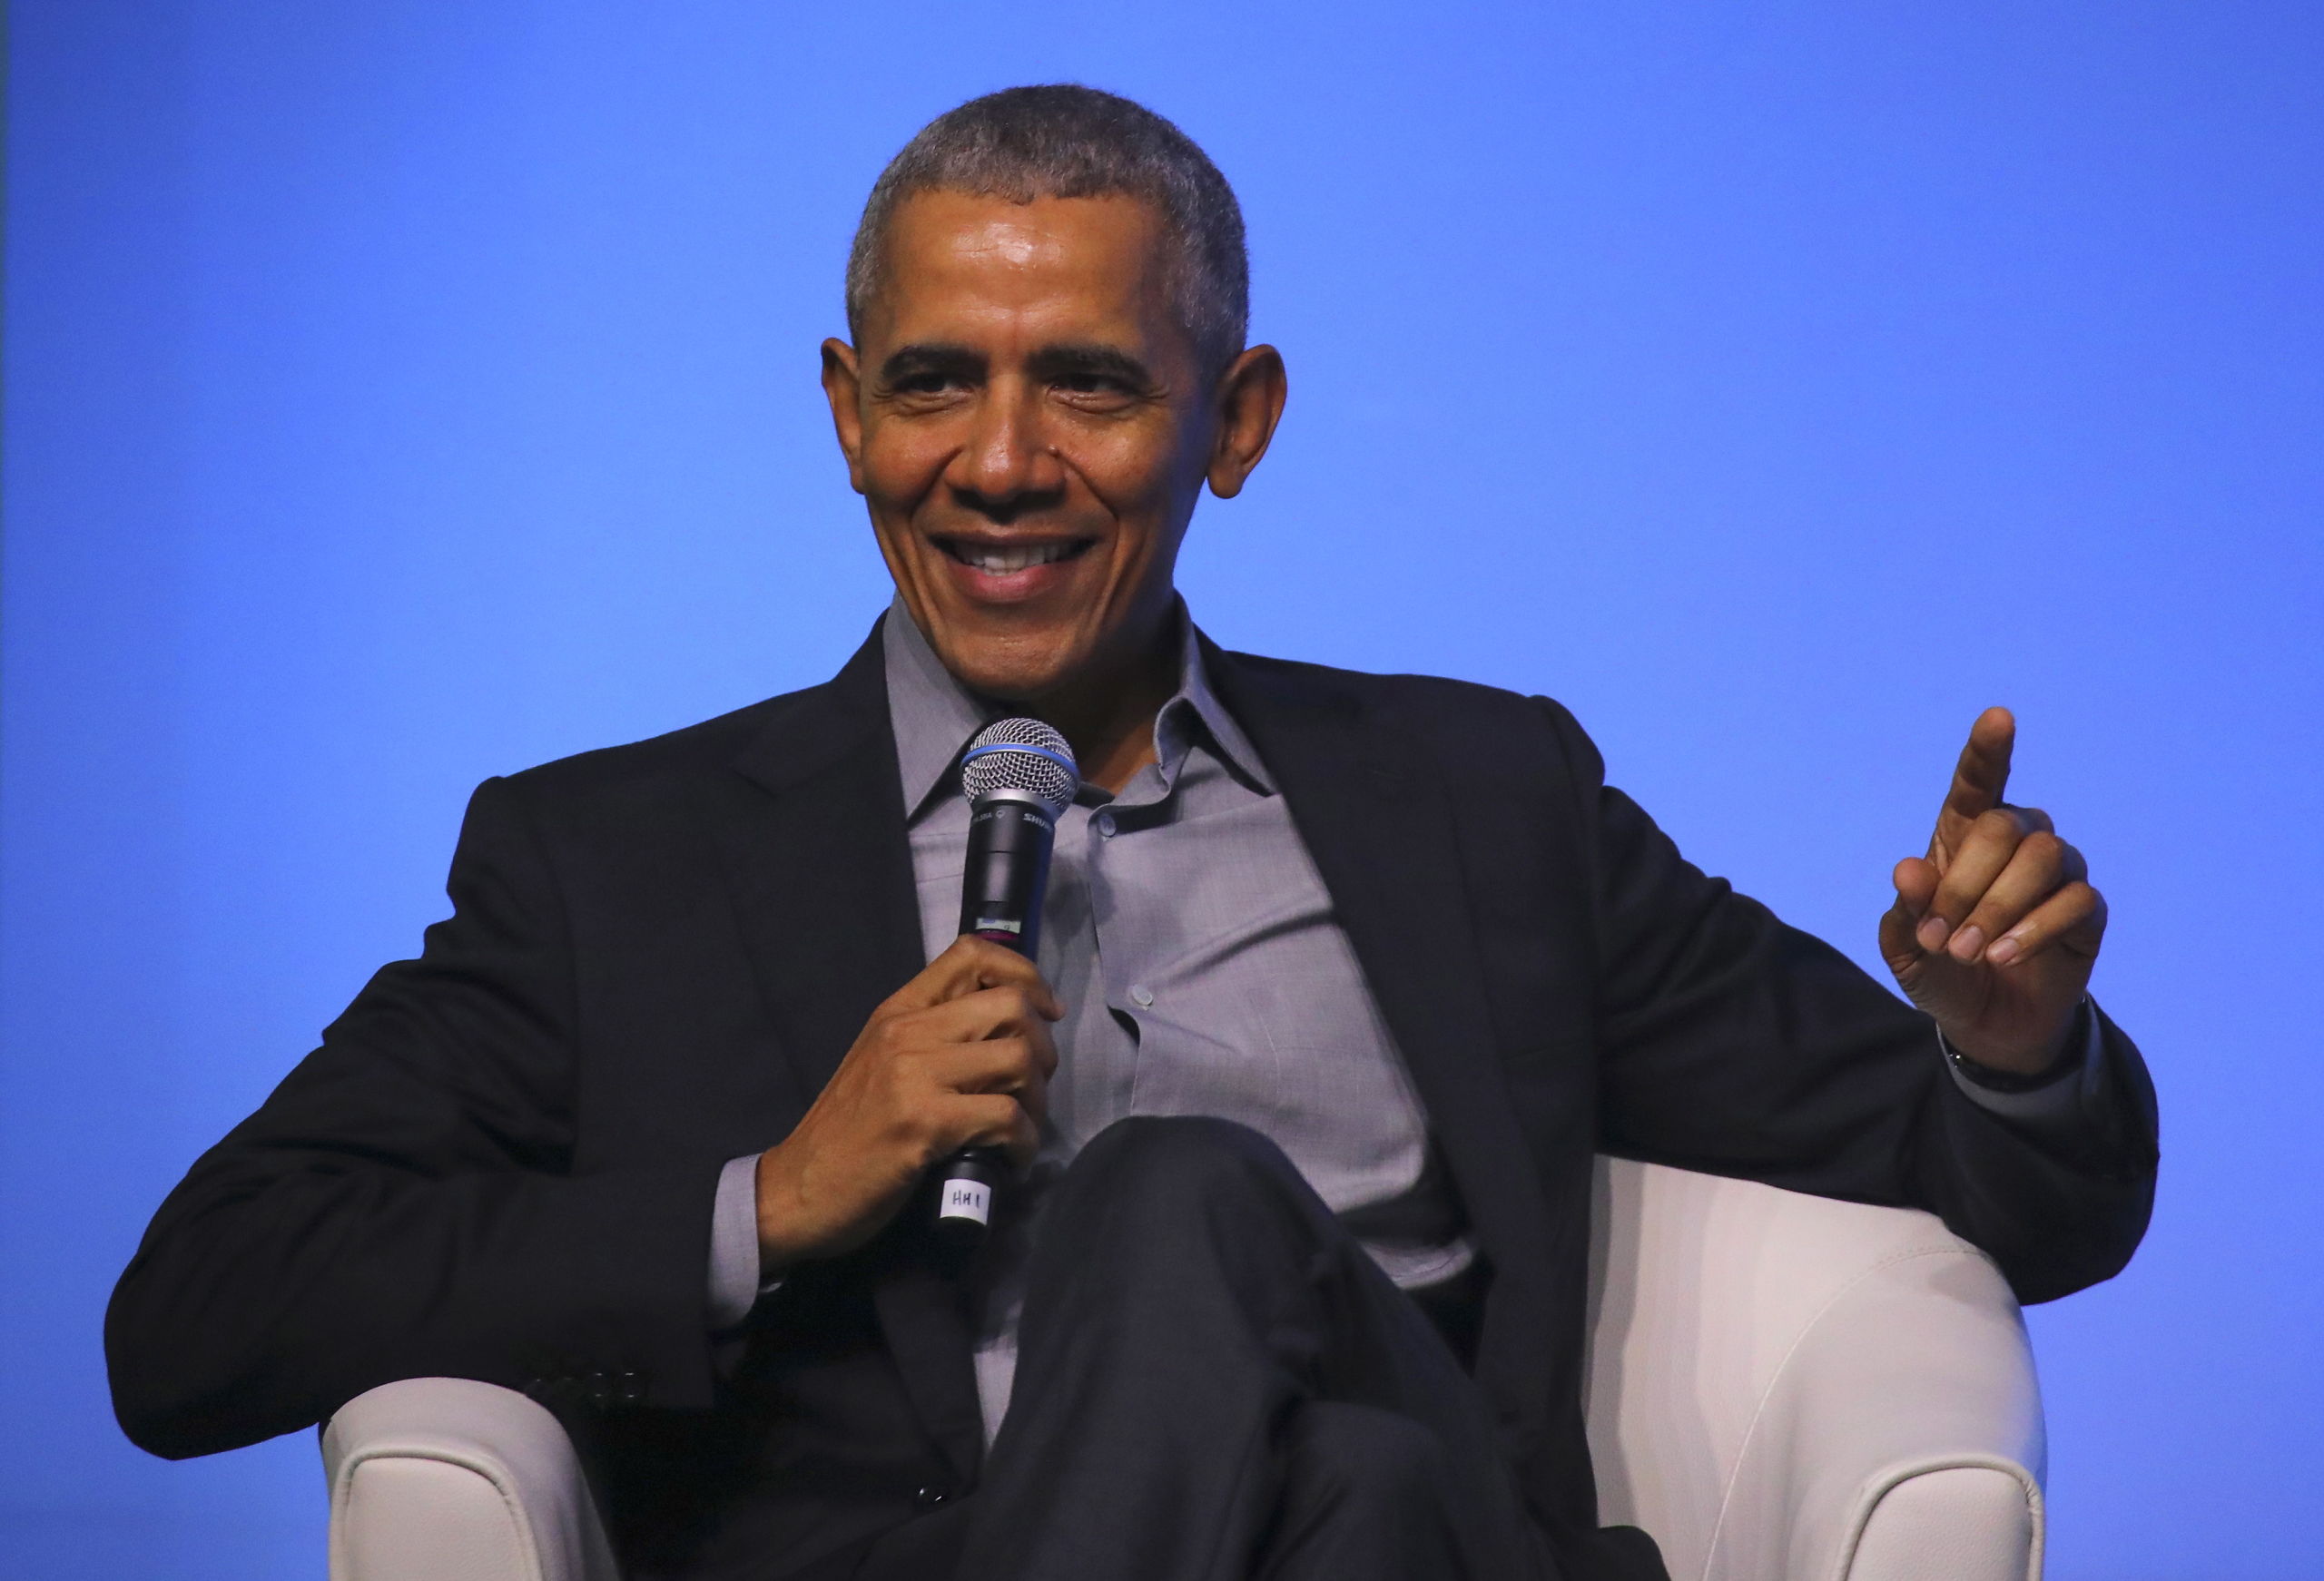 Oud-president Obama blijkt een populair persoon om te gebruiken in campagnespotjes.